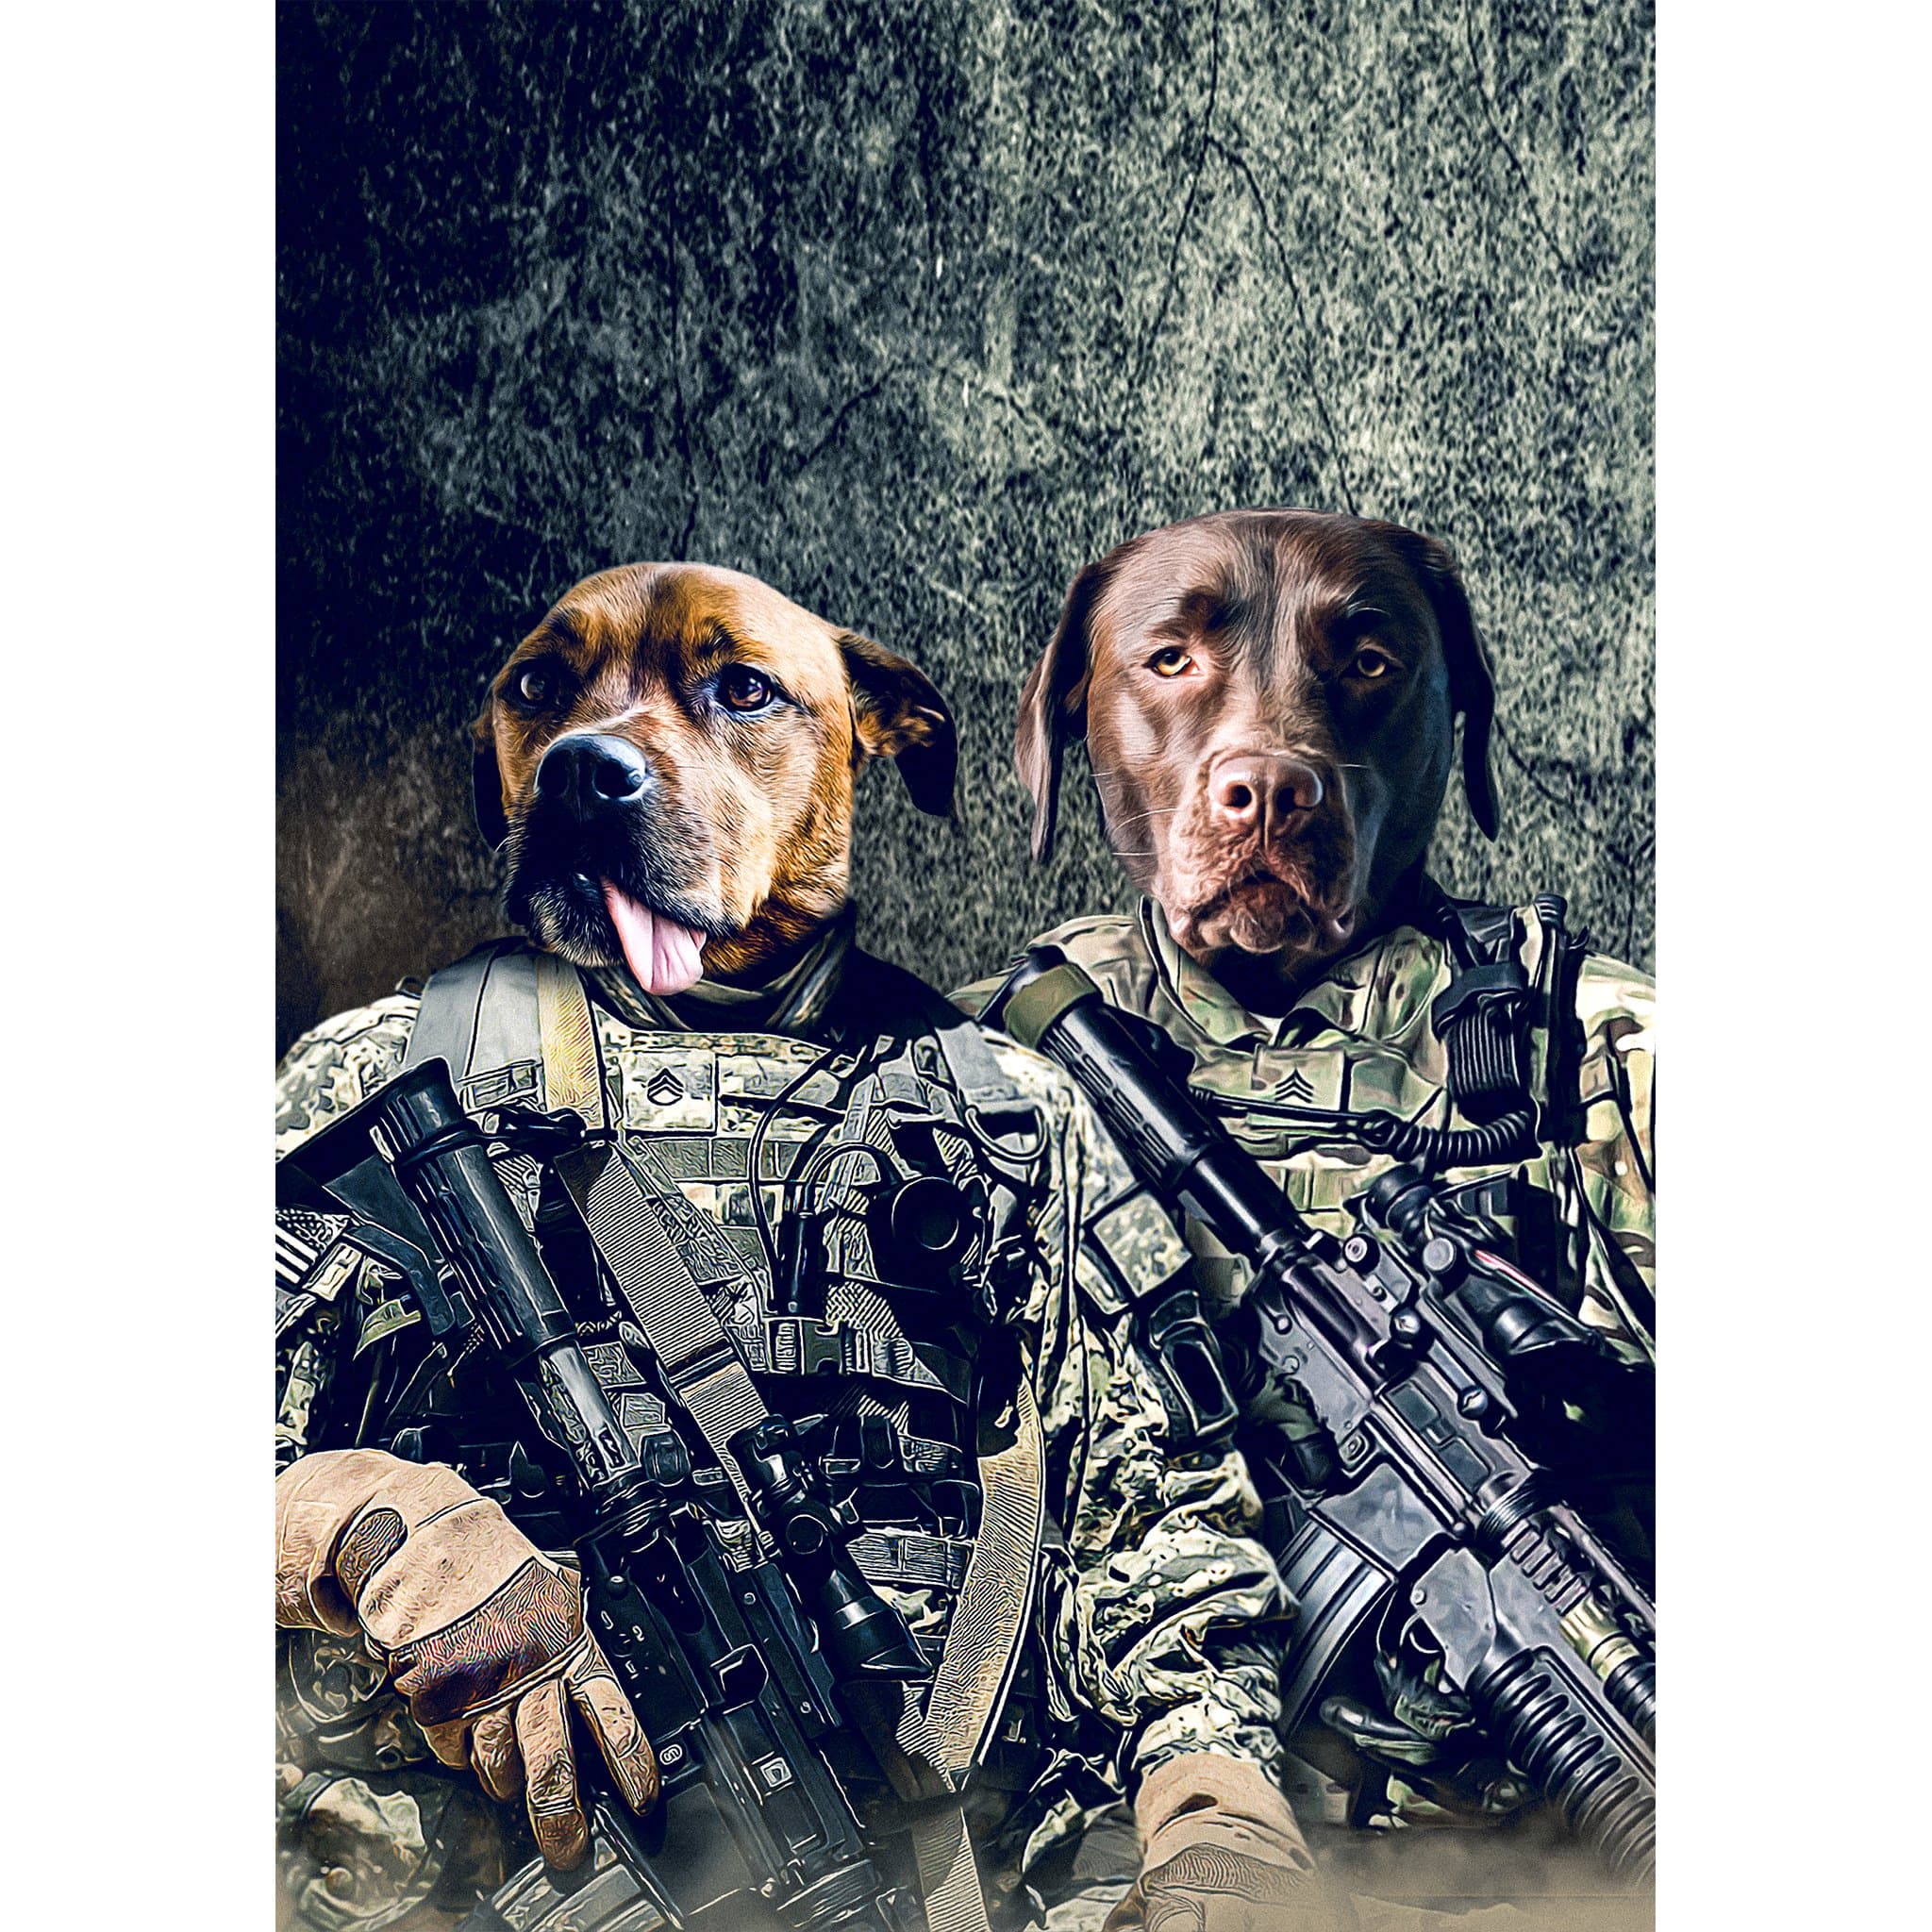 &#39;The Army Veterans&#39; 2 Pet Digital Portrait